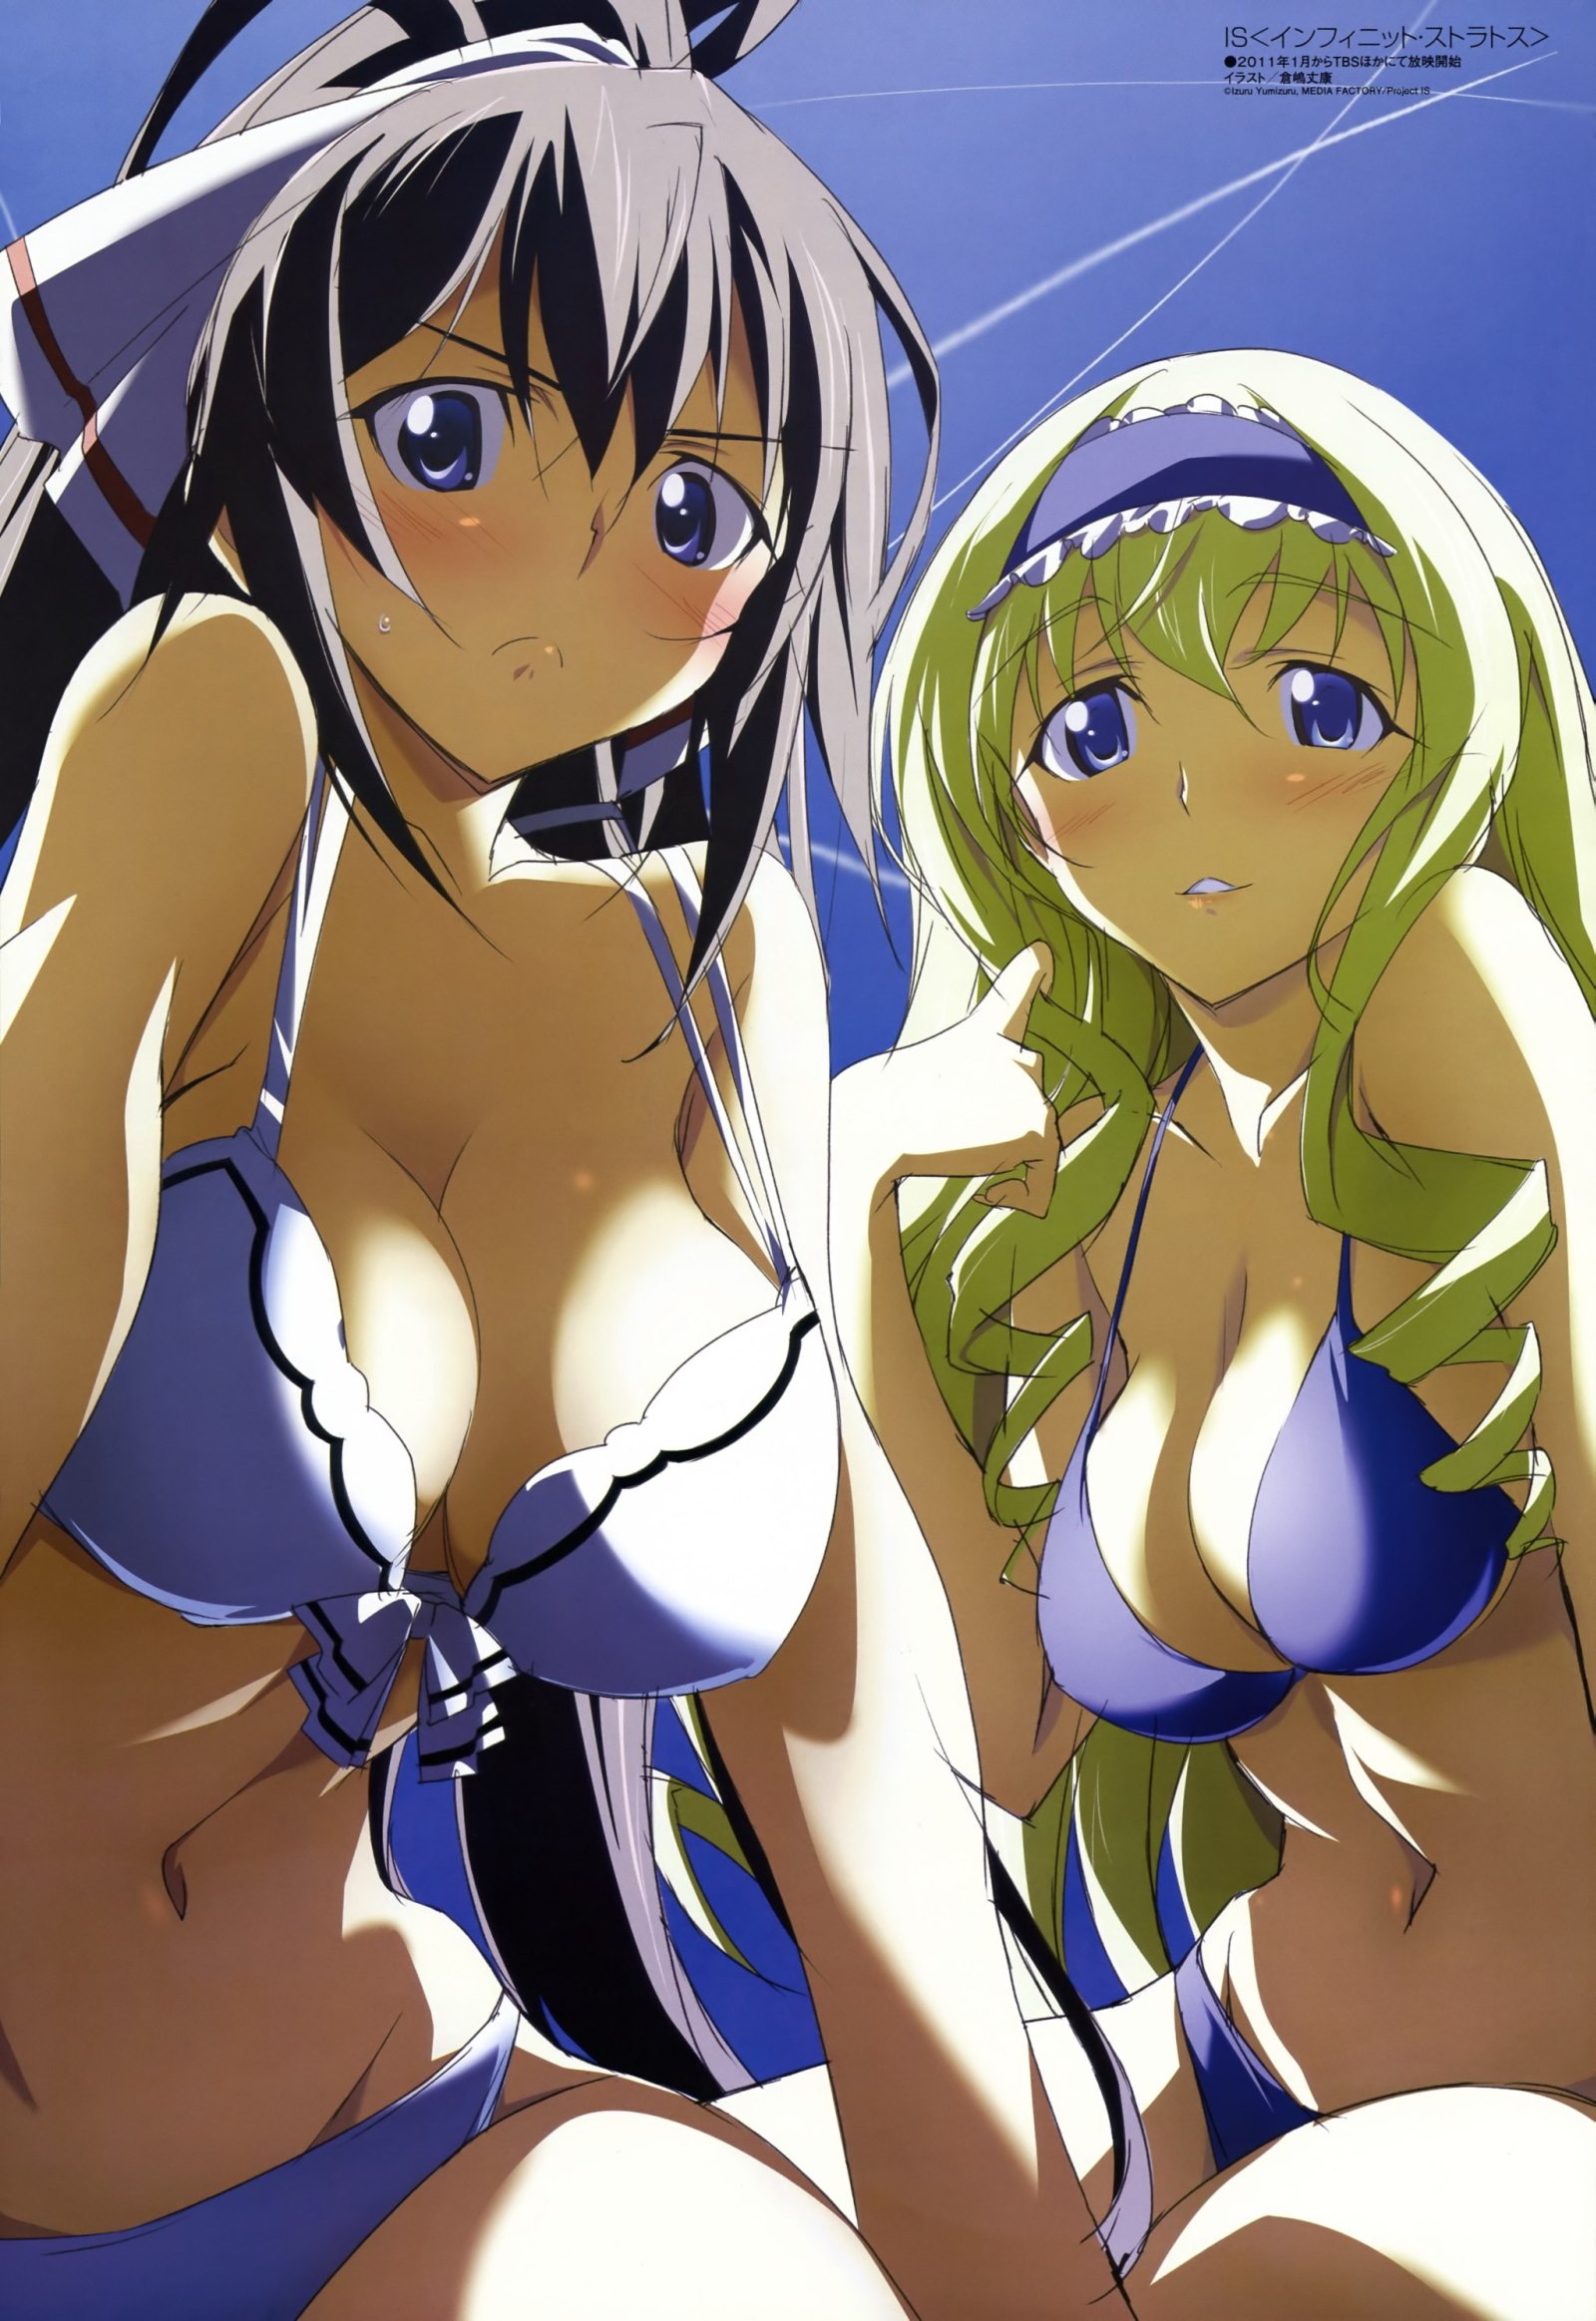 аниме картинка две девушки в купальниках на пляже